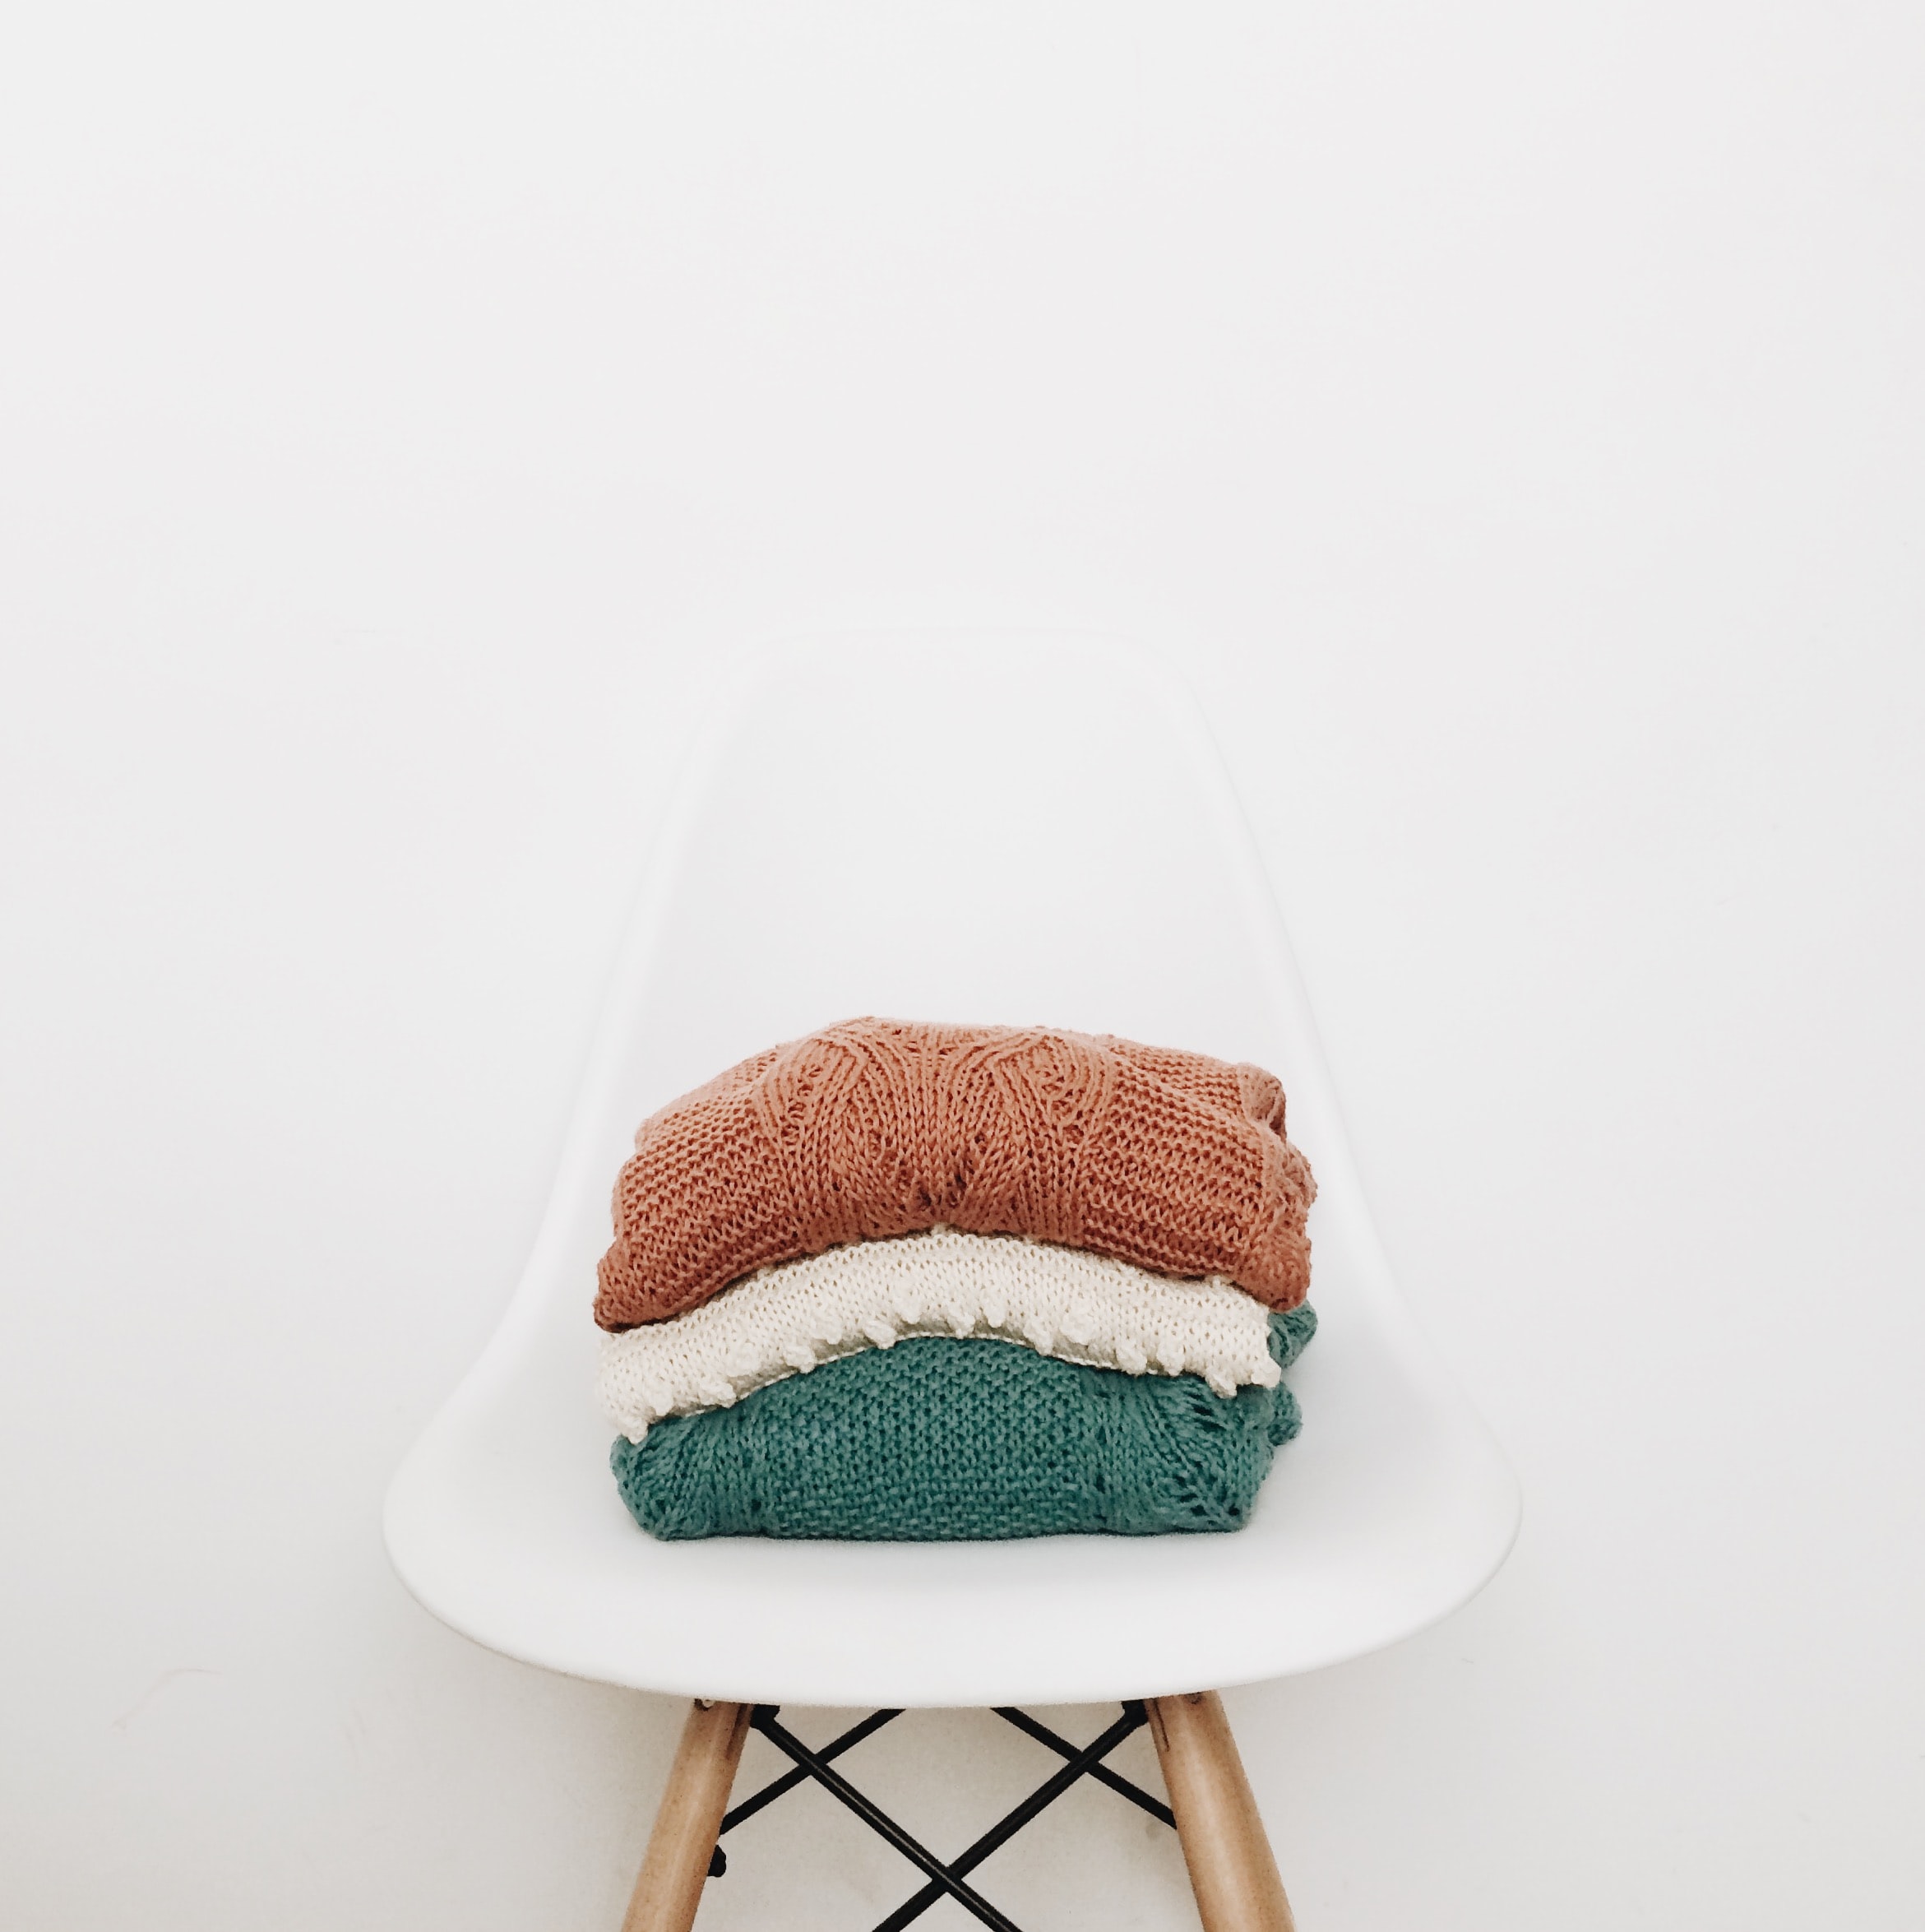 image-knitwear-stoel-stockfoto.jpg